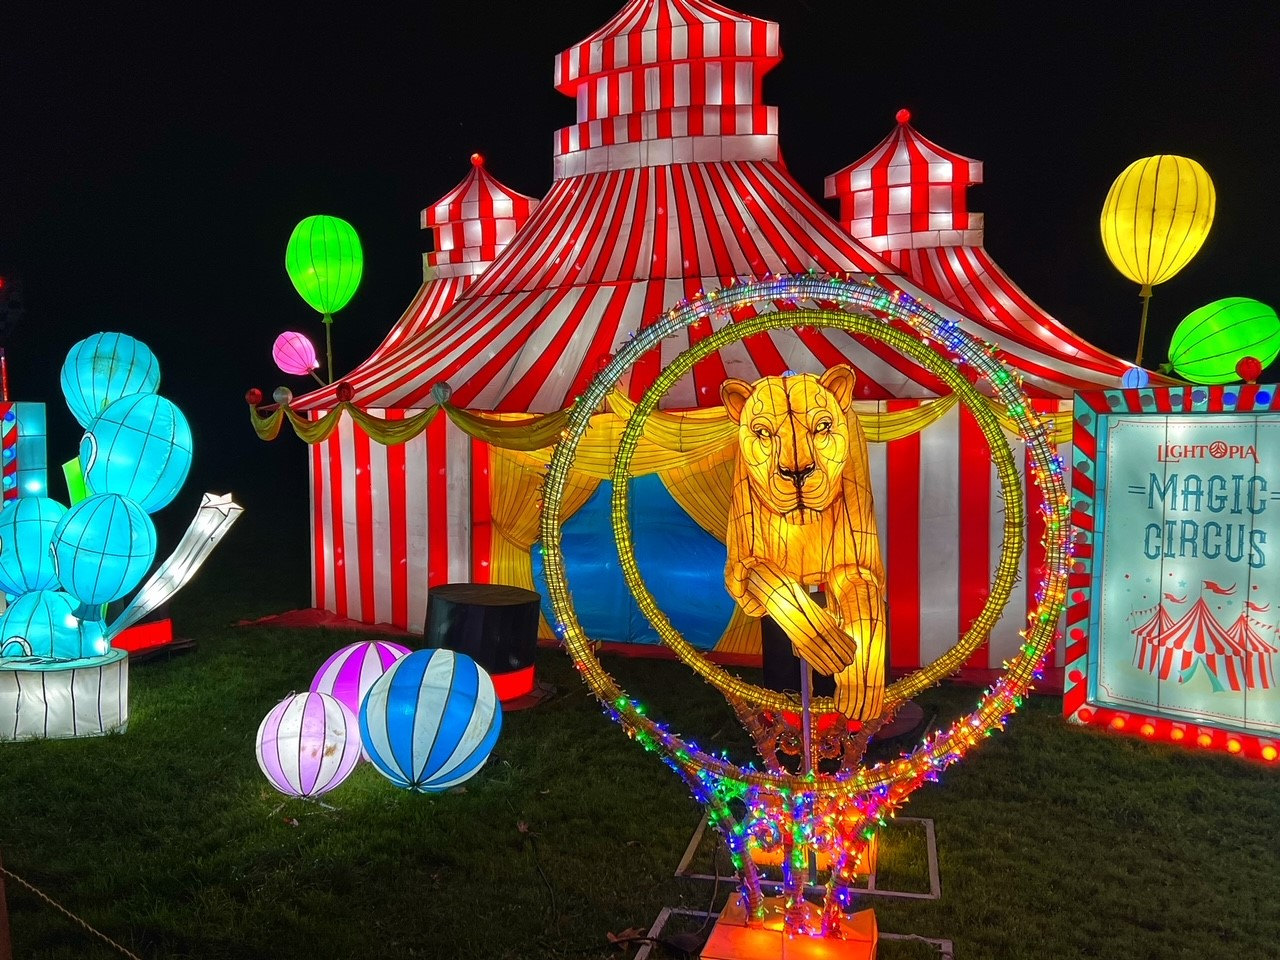 Instalación Lightopia Magic Circus